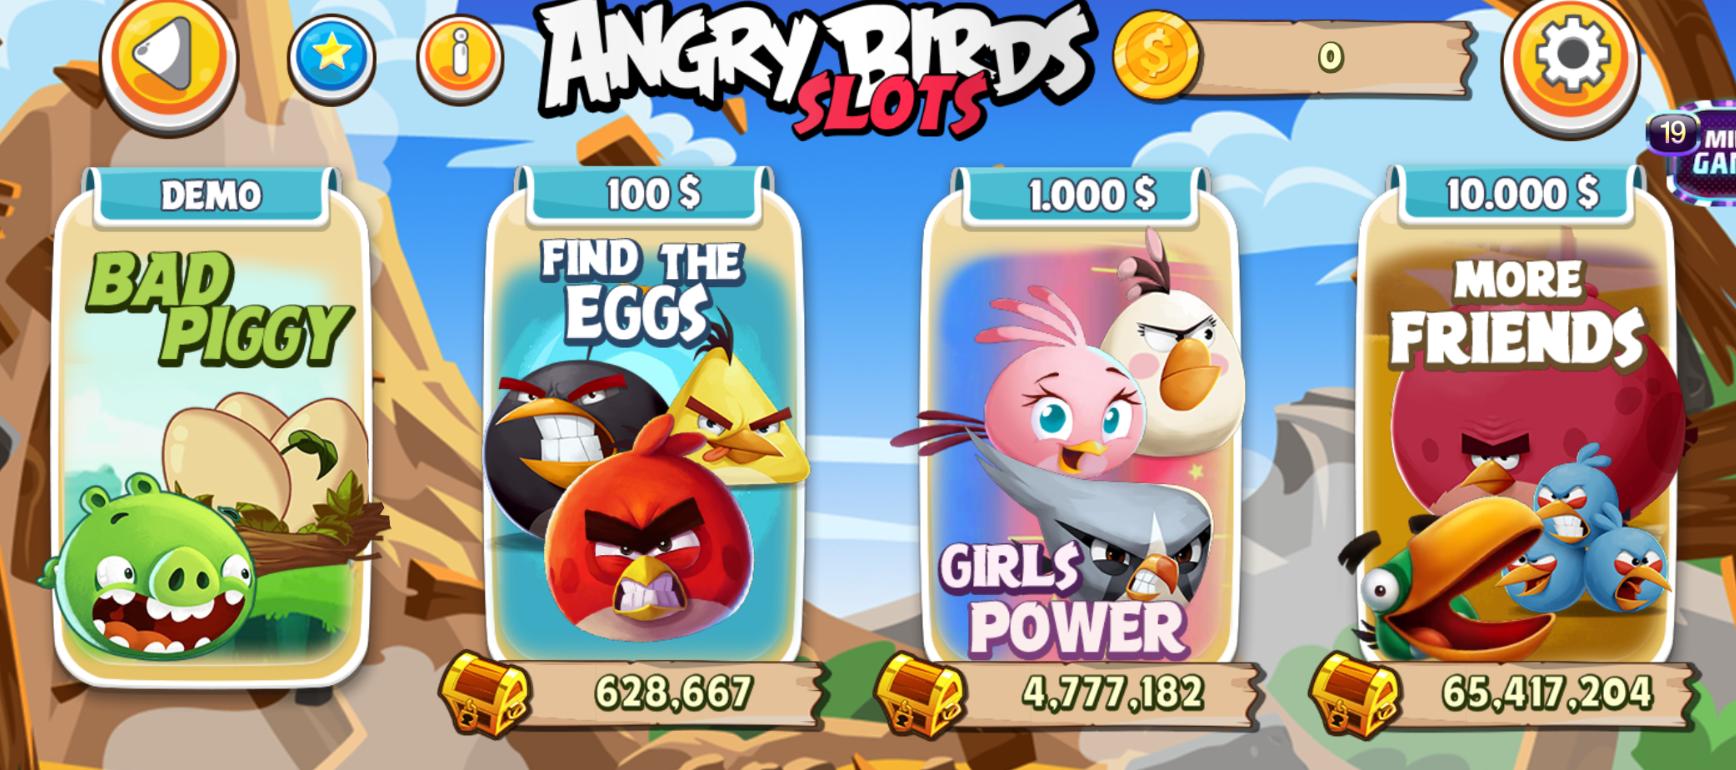 Hướng dẫn cách chơi Angry Birds Slots khi tải 789Club